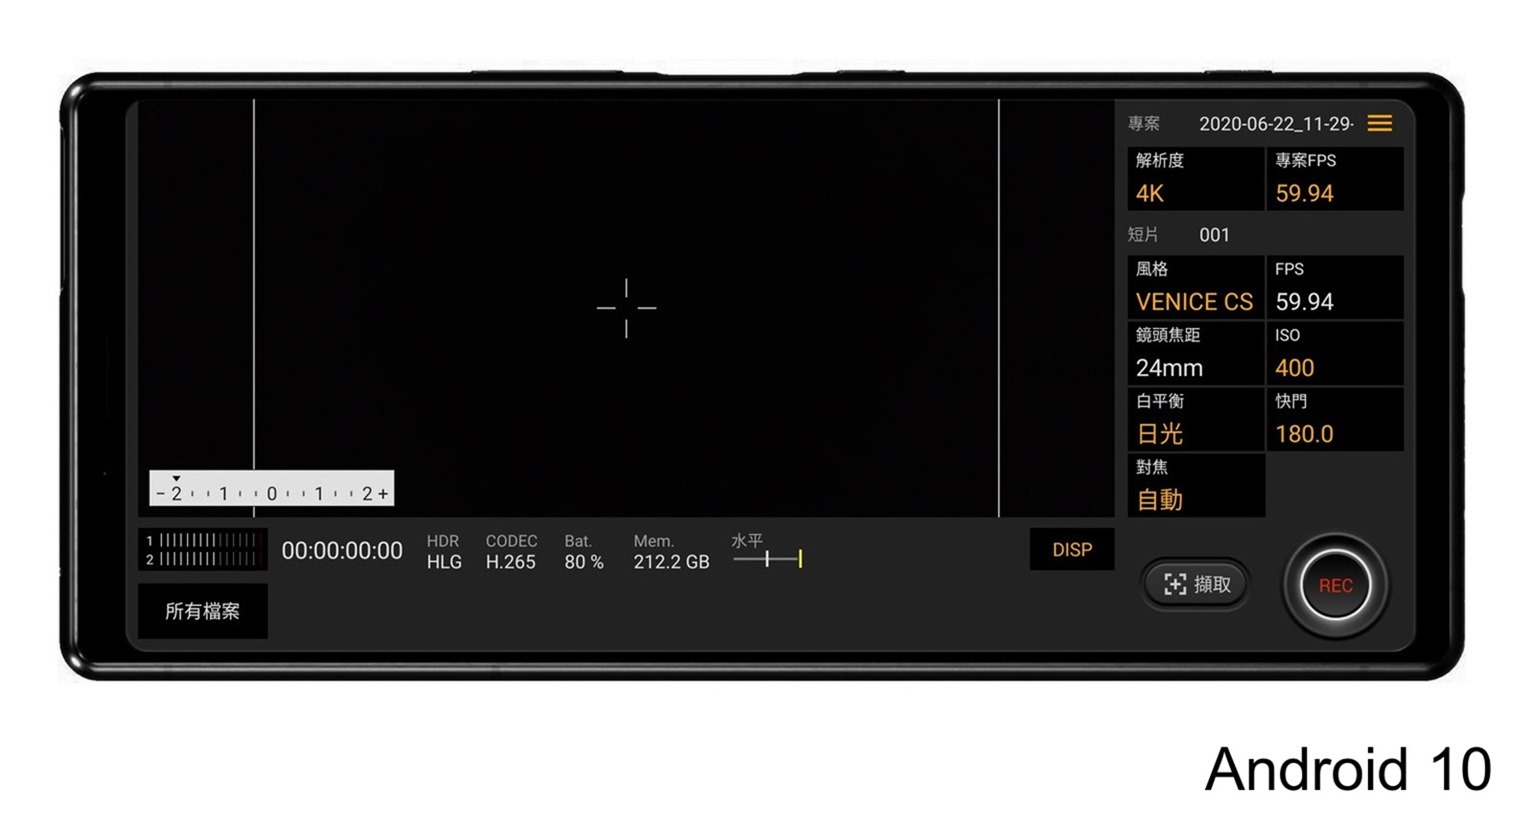 Sony Xperia 1 II 更新 Android 11 實測，5G+4G 雙卡開放，支援 4K120 錄影 @3C 達人廖阿輝